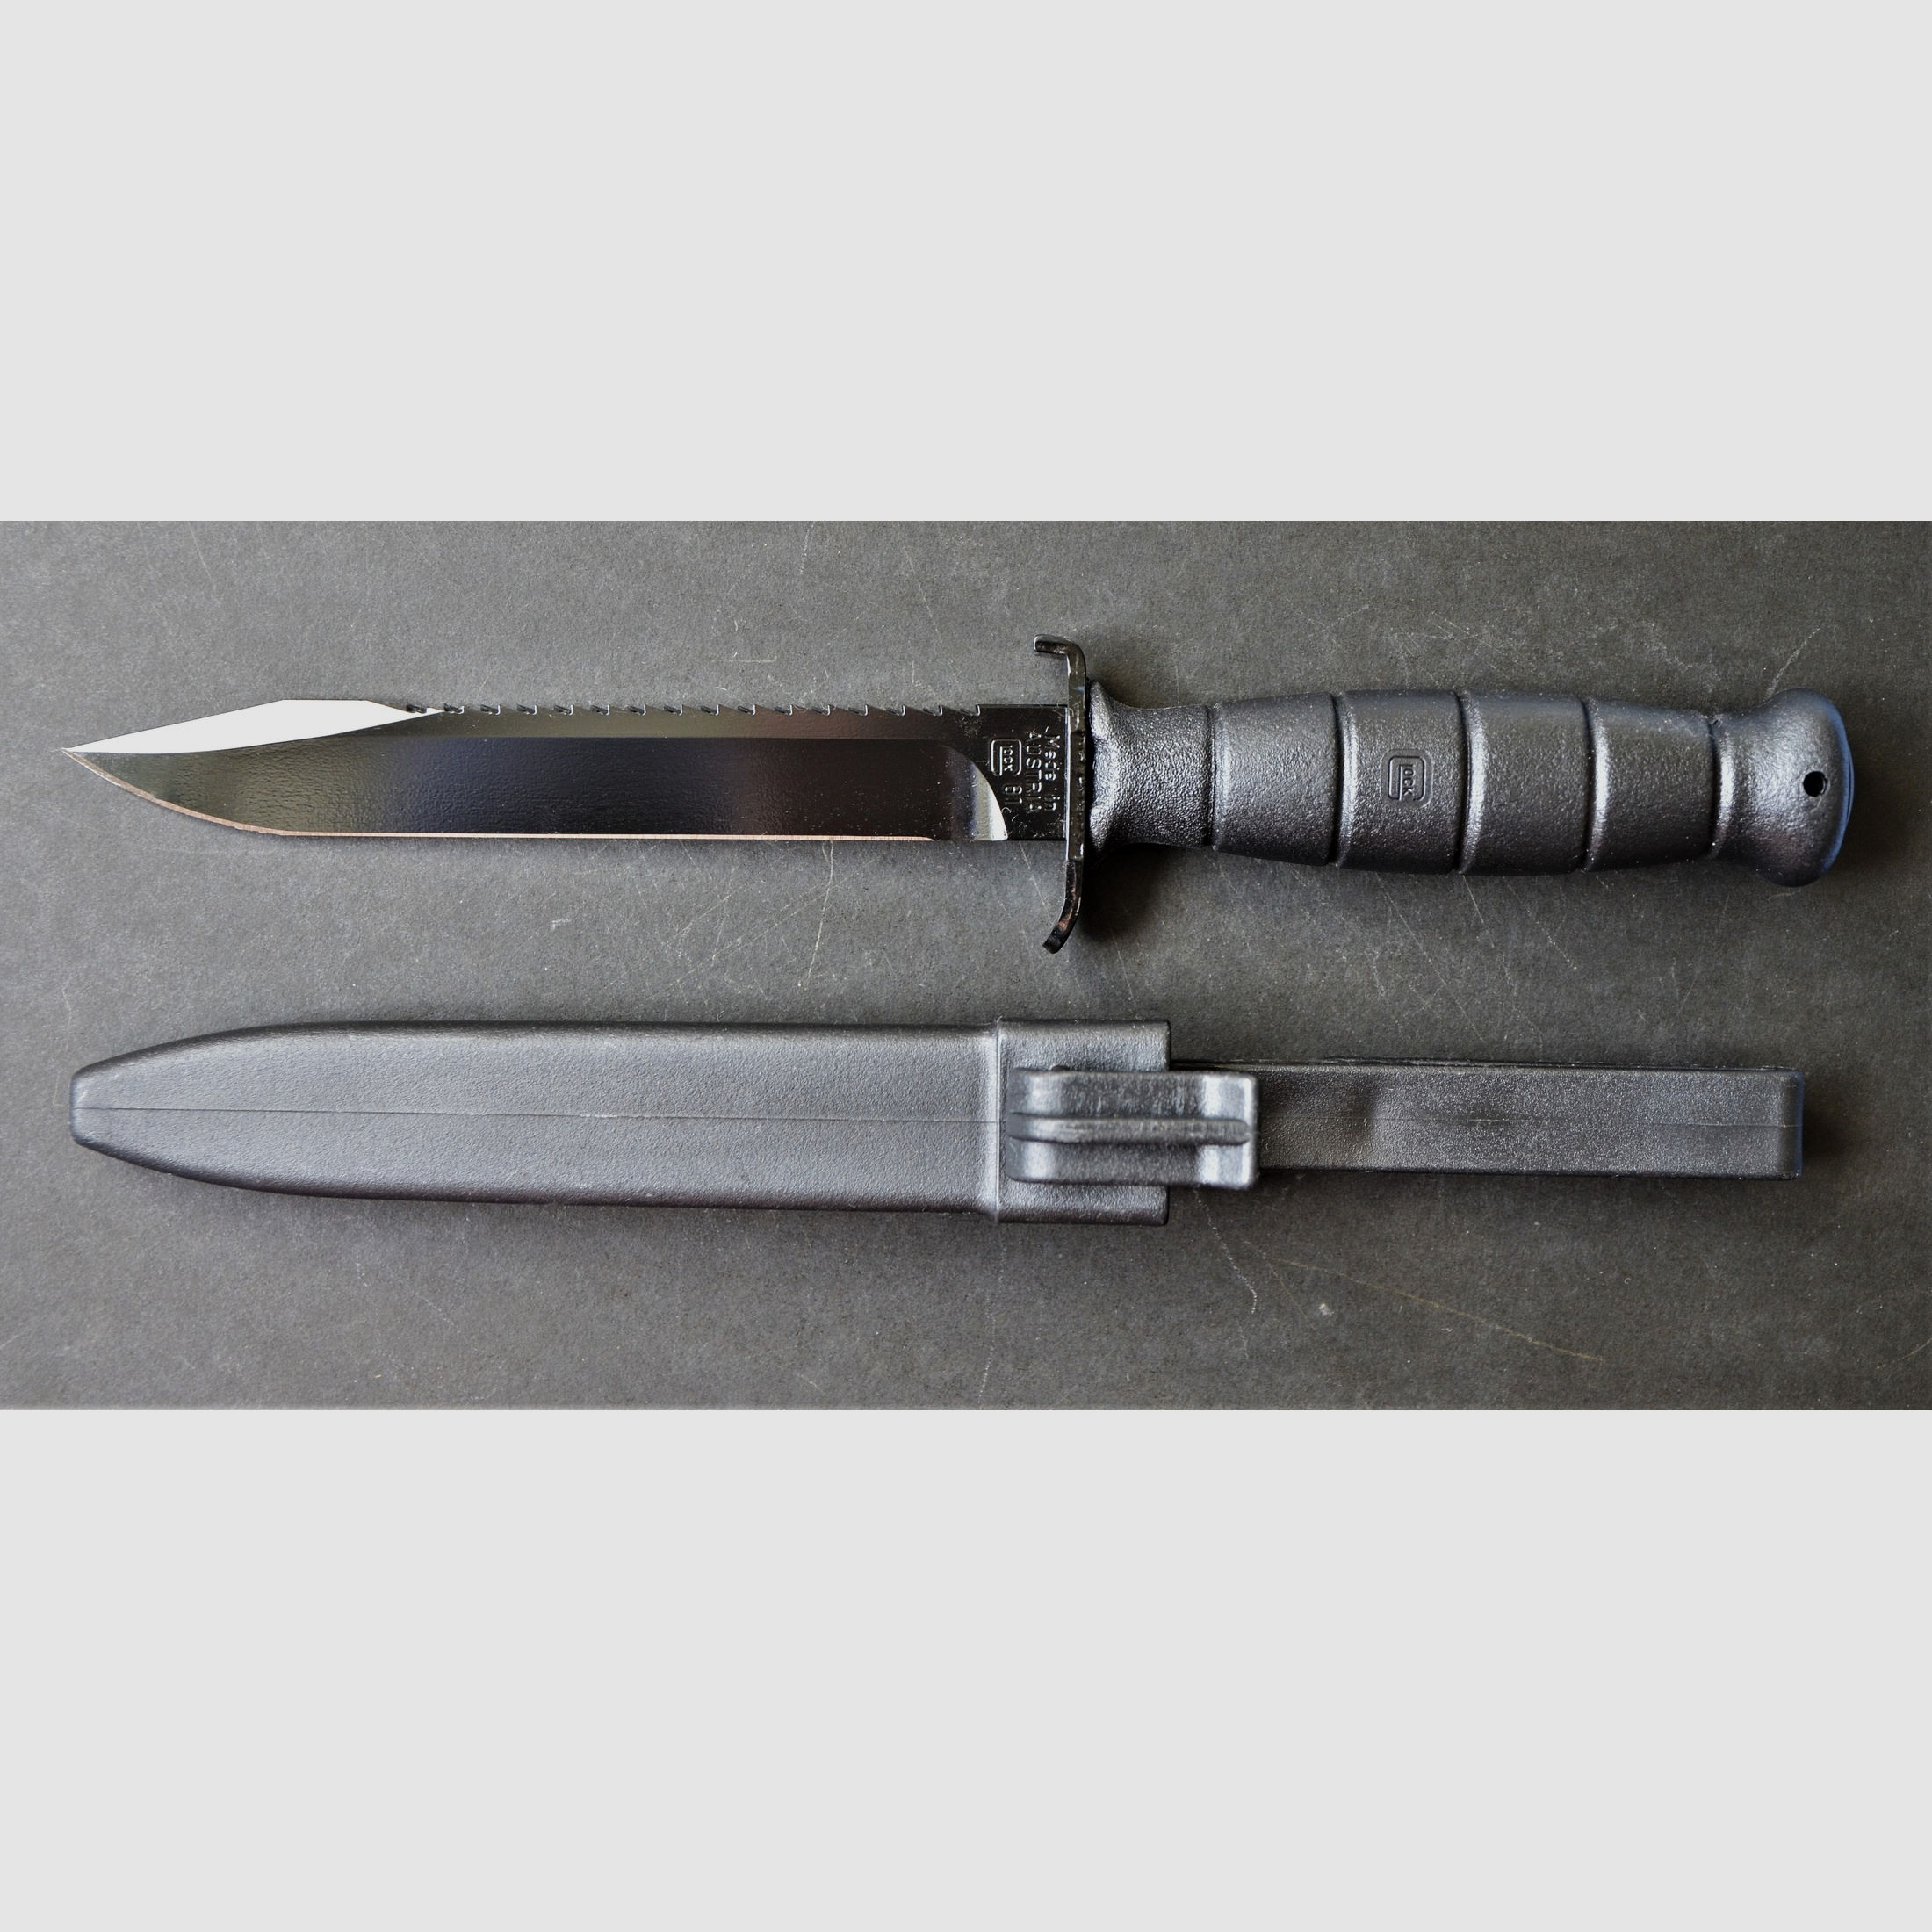 Glock Feldmesser FM 81 schwarz – Militärisches Mehrzweckmesser